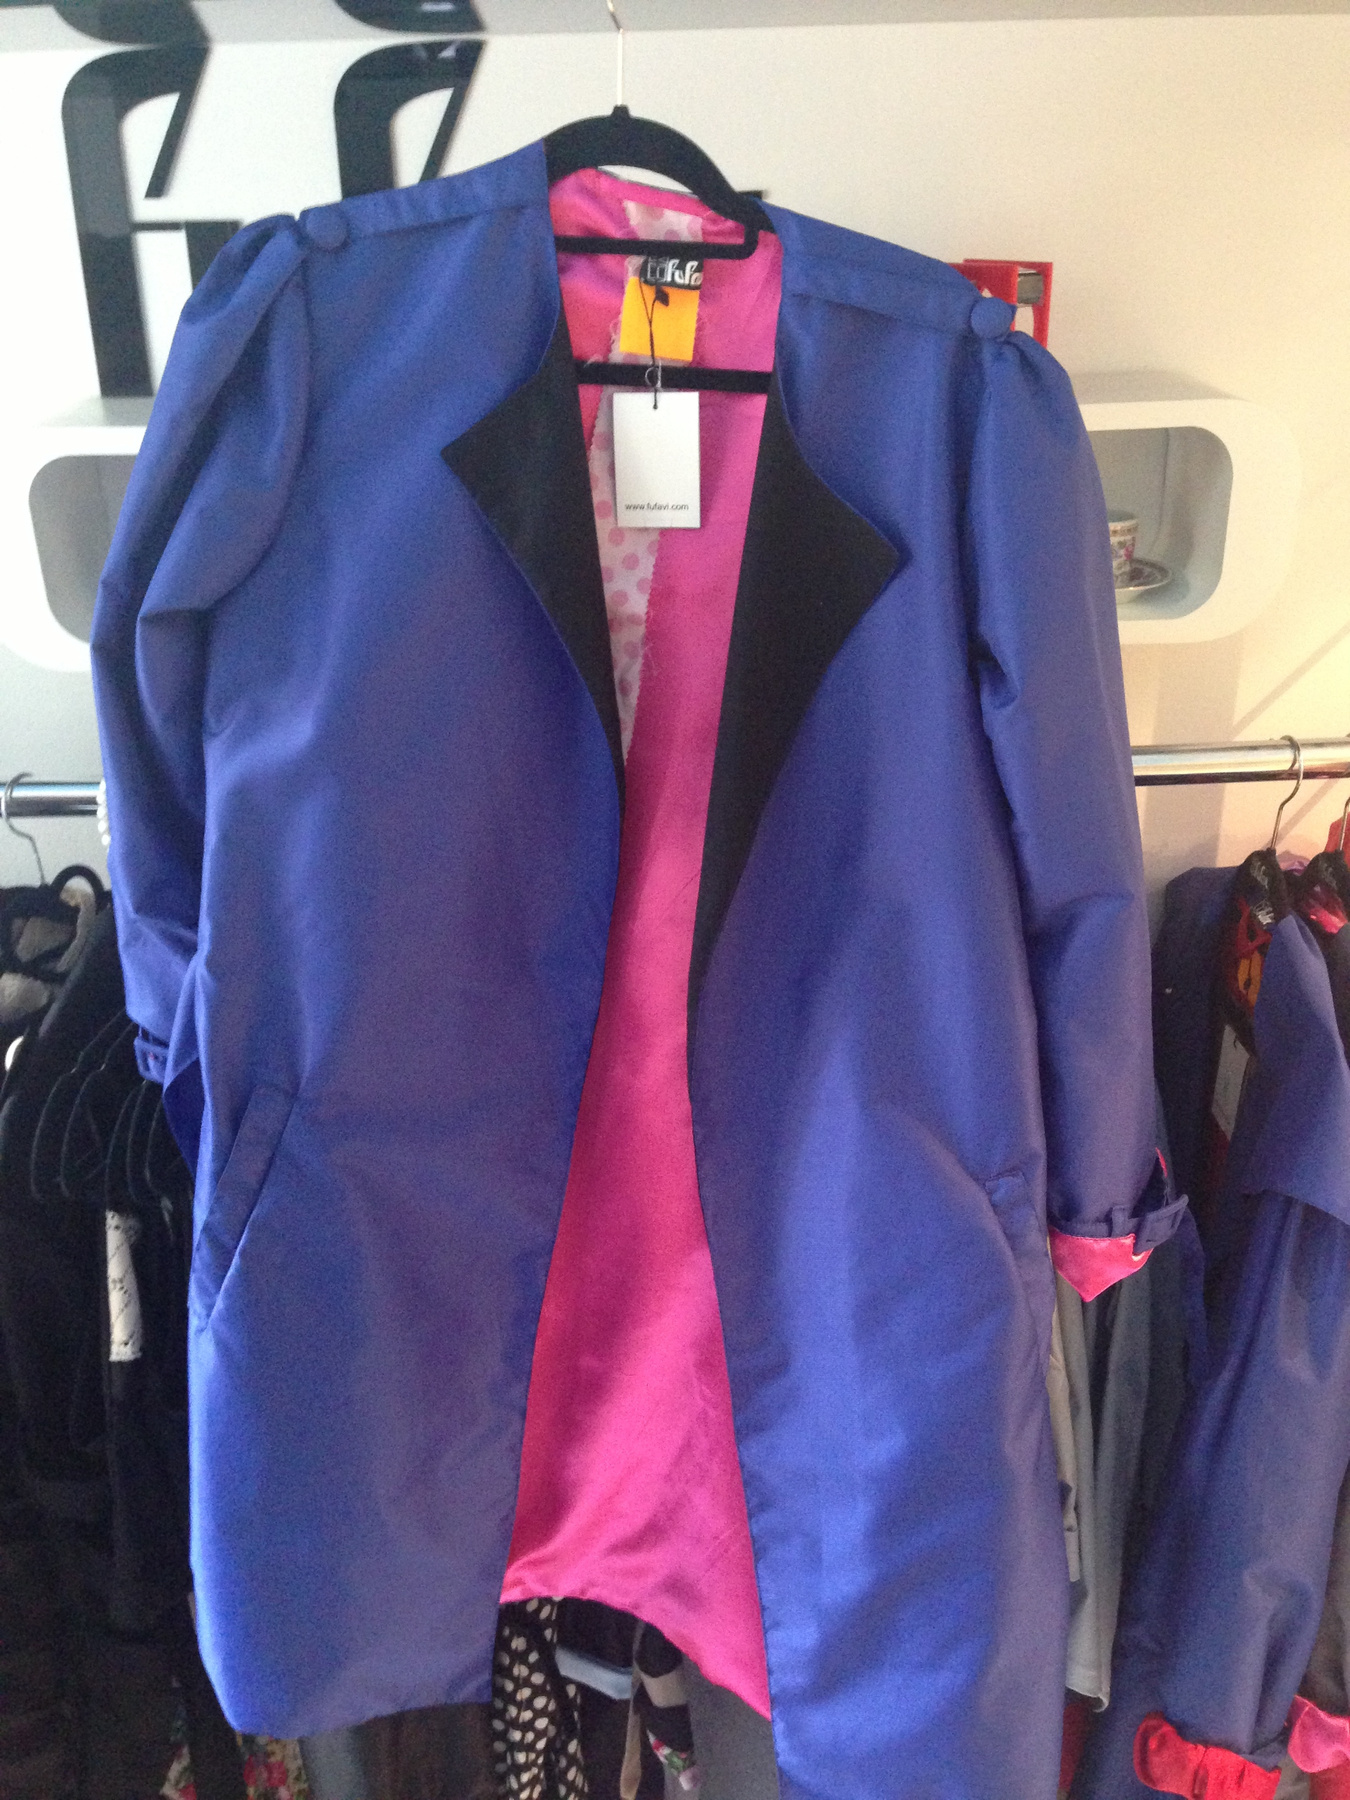 A pink betoldással elég jópofa ez a kabát is. 42 ezer forint helyett 29400 forint.